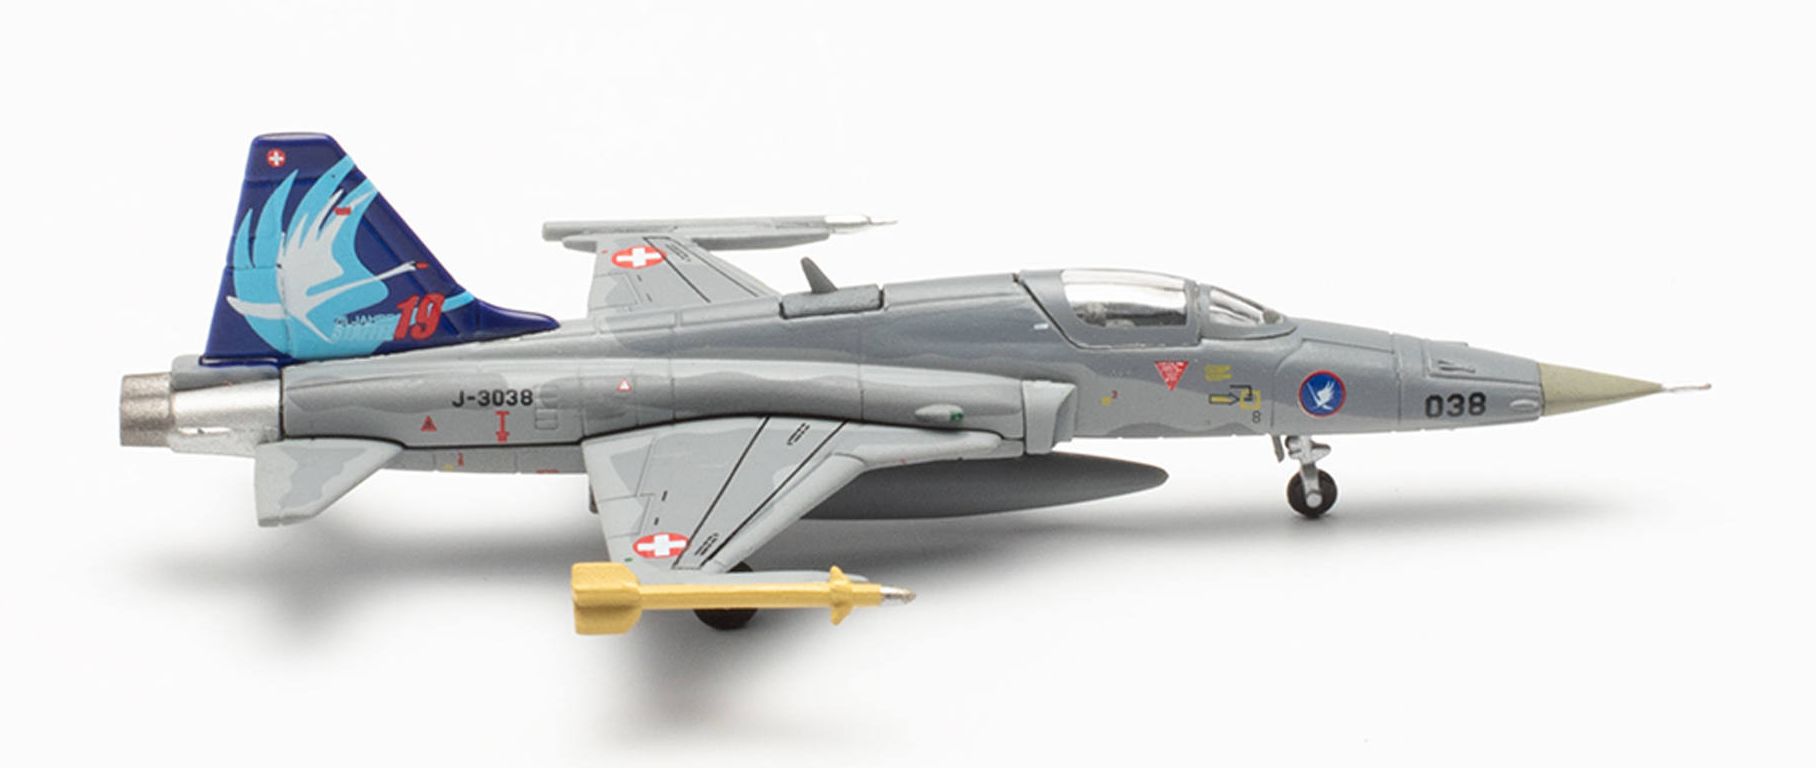 Herpa 572538 - Swiss Air Force Northrop F-5E Tiger II Fliegerstaffel 19 “Swans”, Emmen Air Base – J-3038